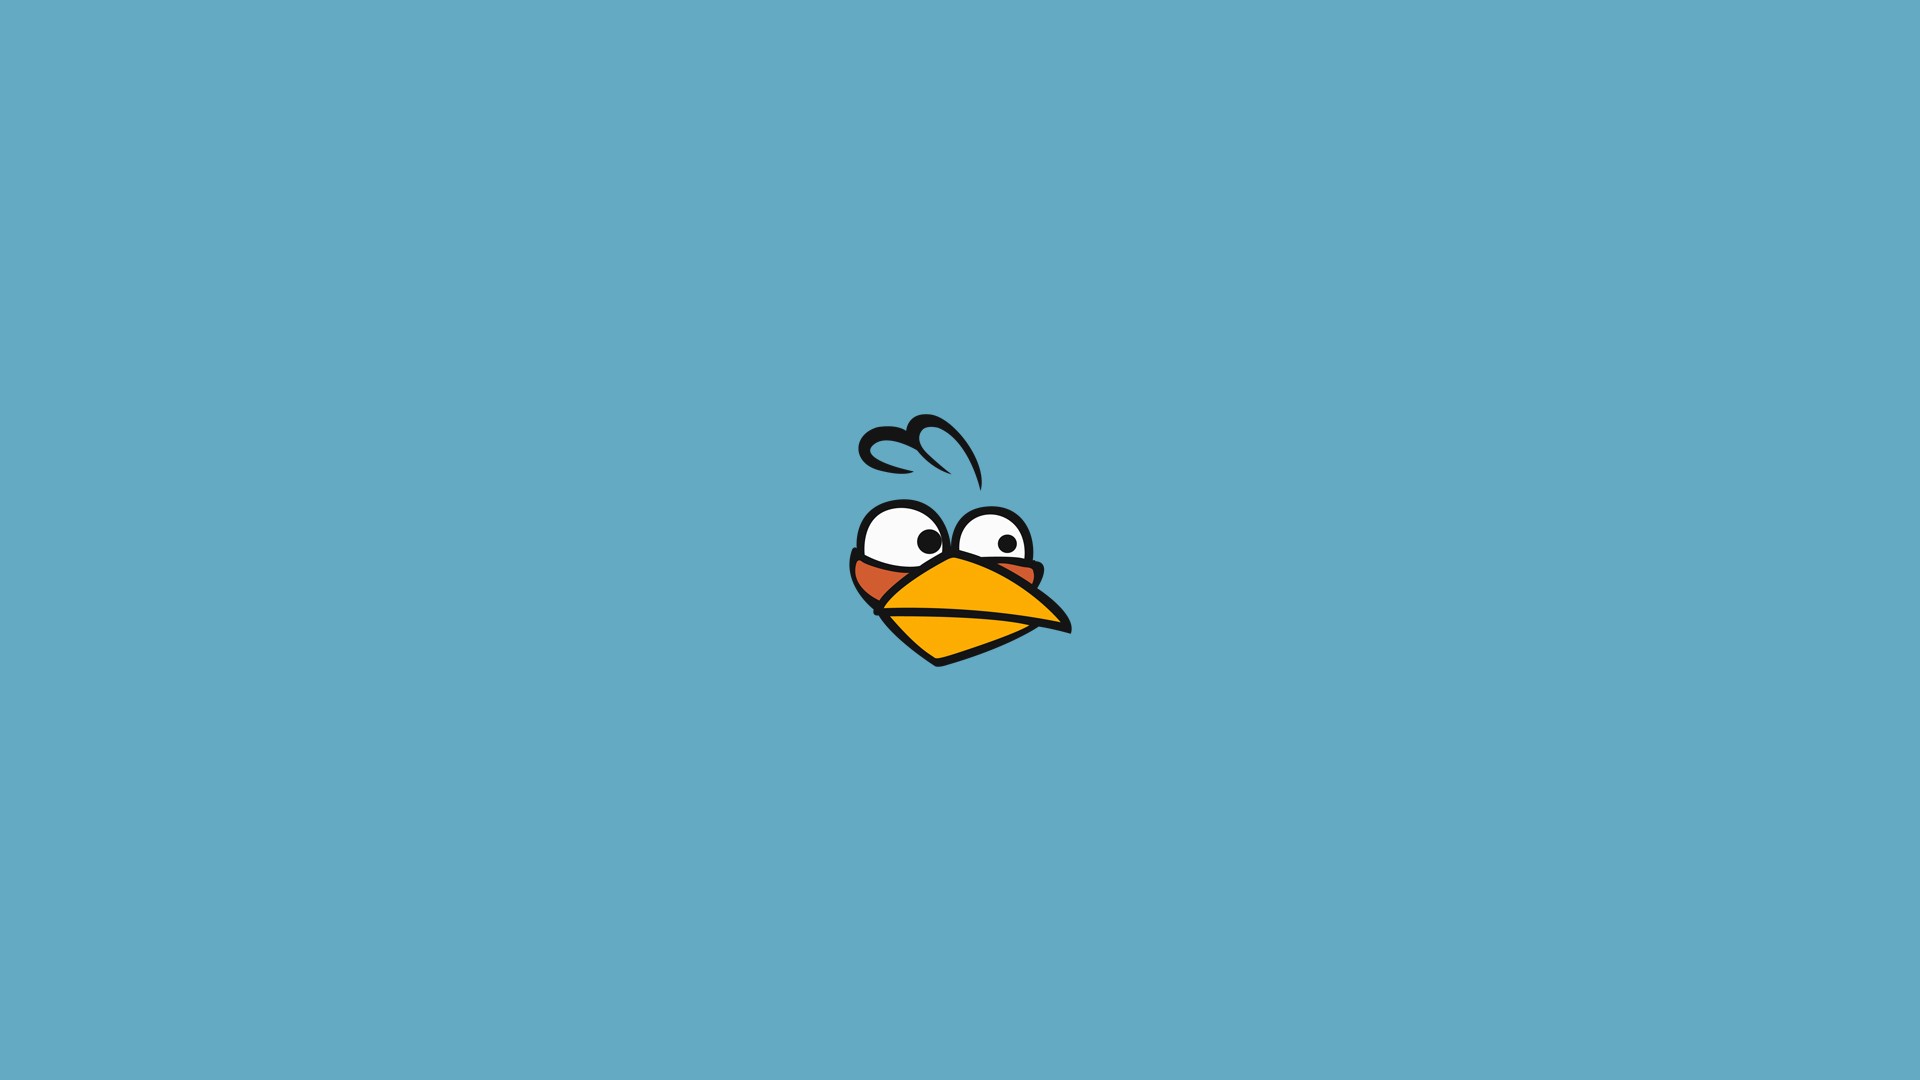 uccelli arrabbiati live wallpaper,angry birds,blu,cartone animato,sistema operativo,uccello